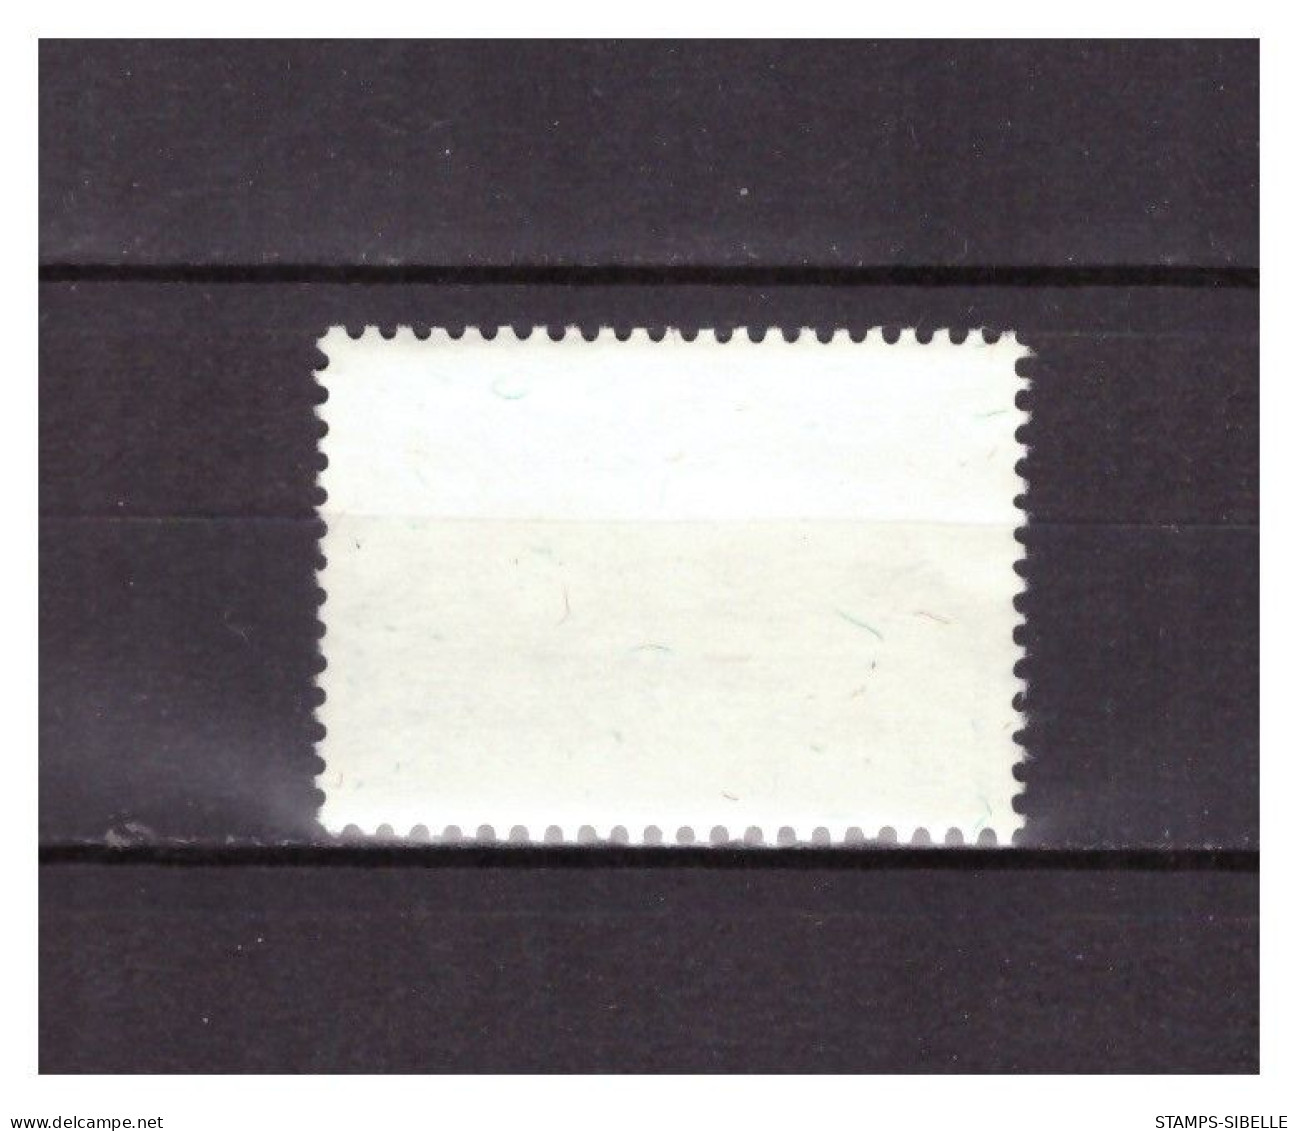 LIECHTENSTEIN   . N °  398  .   50 R    EUROPA     OBLITERE    .  SUPERBE . - Used Stamps